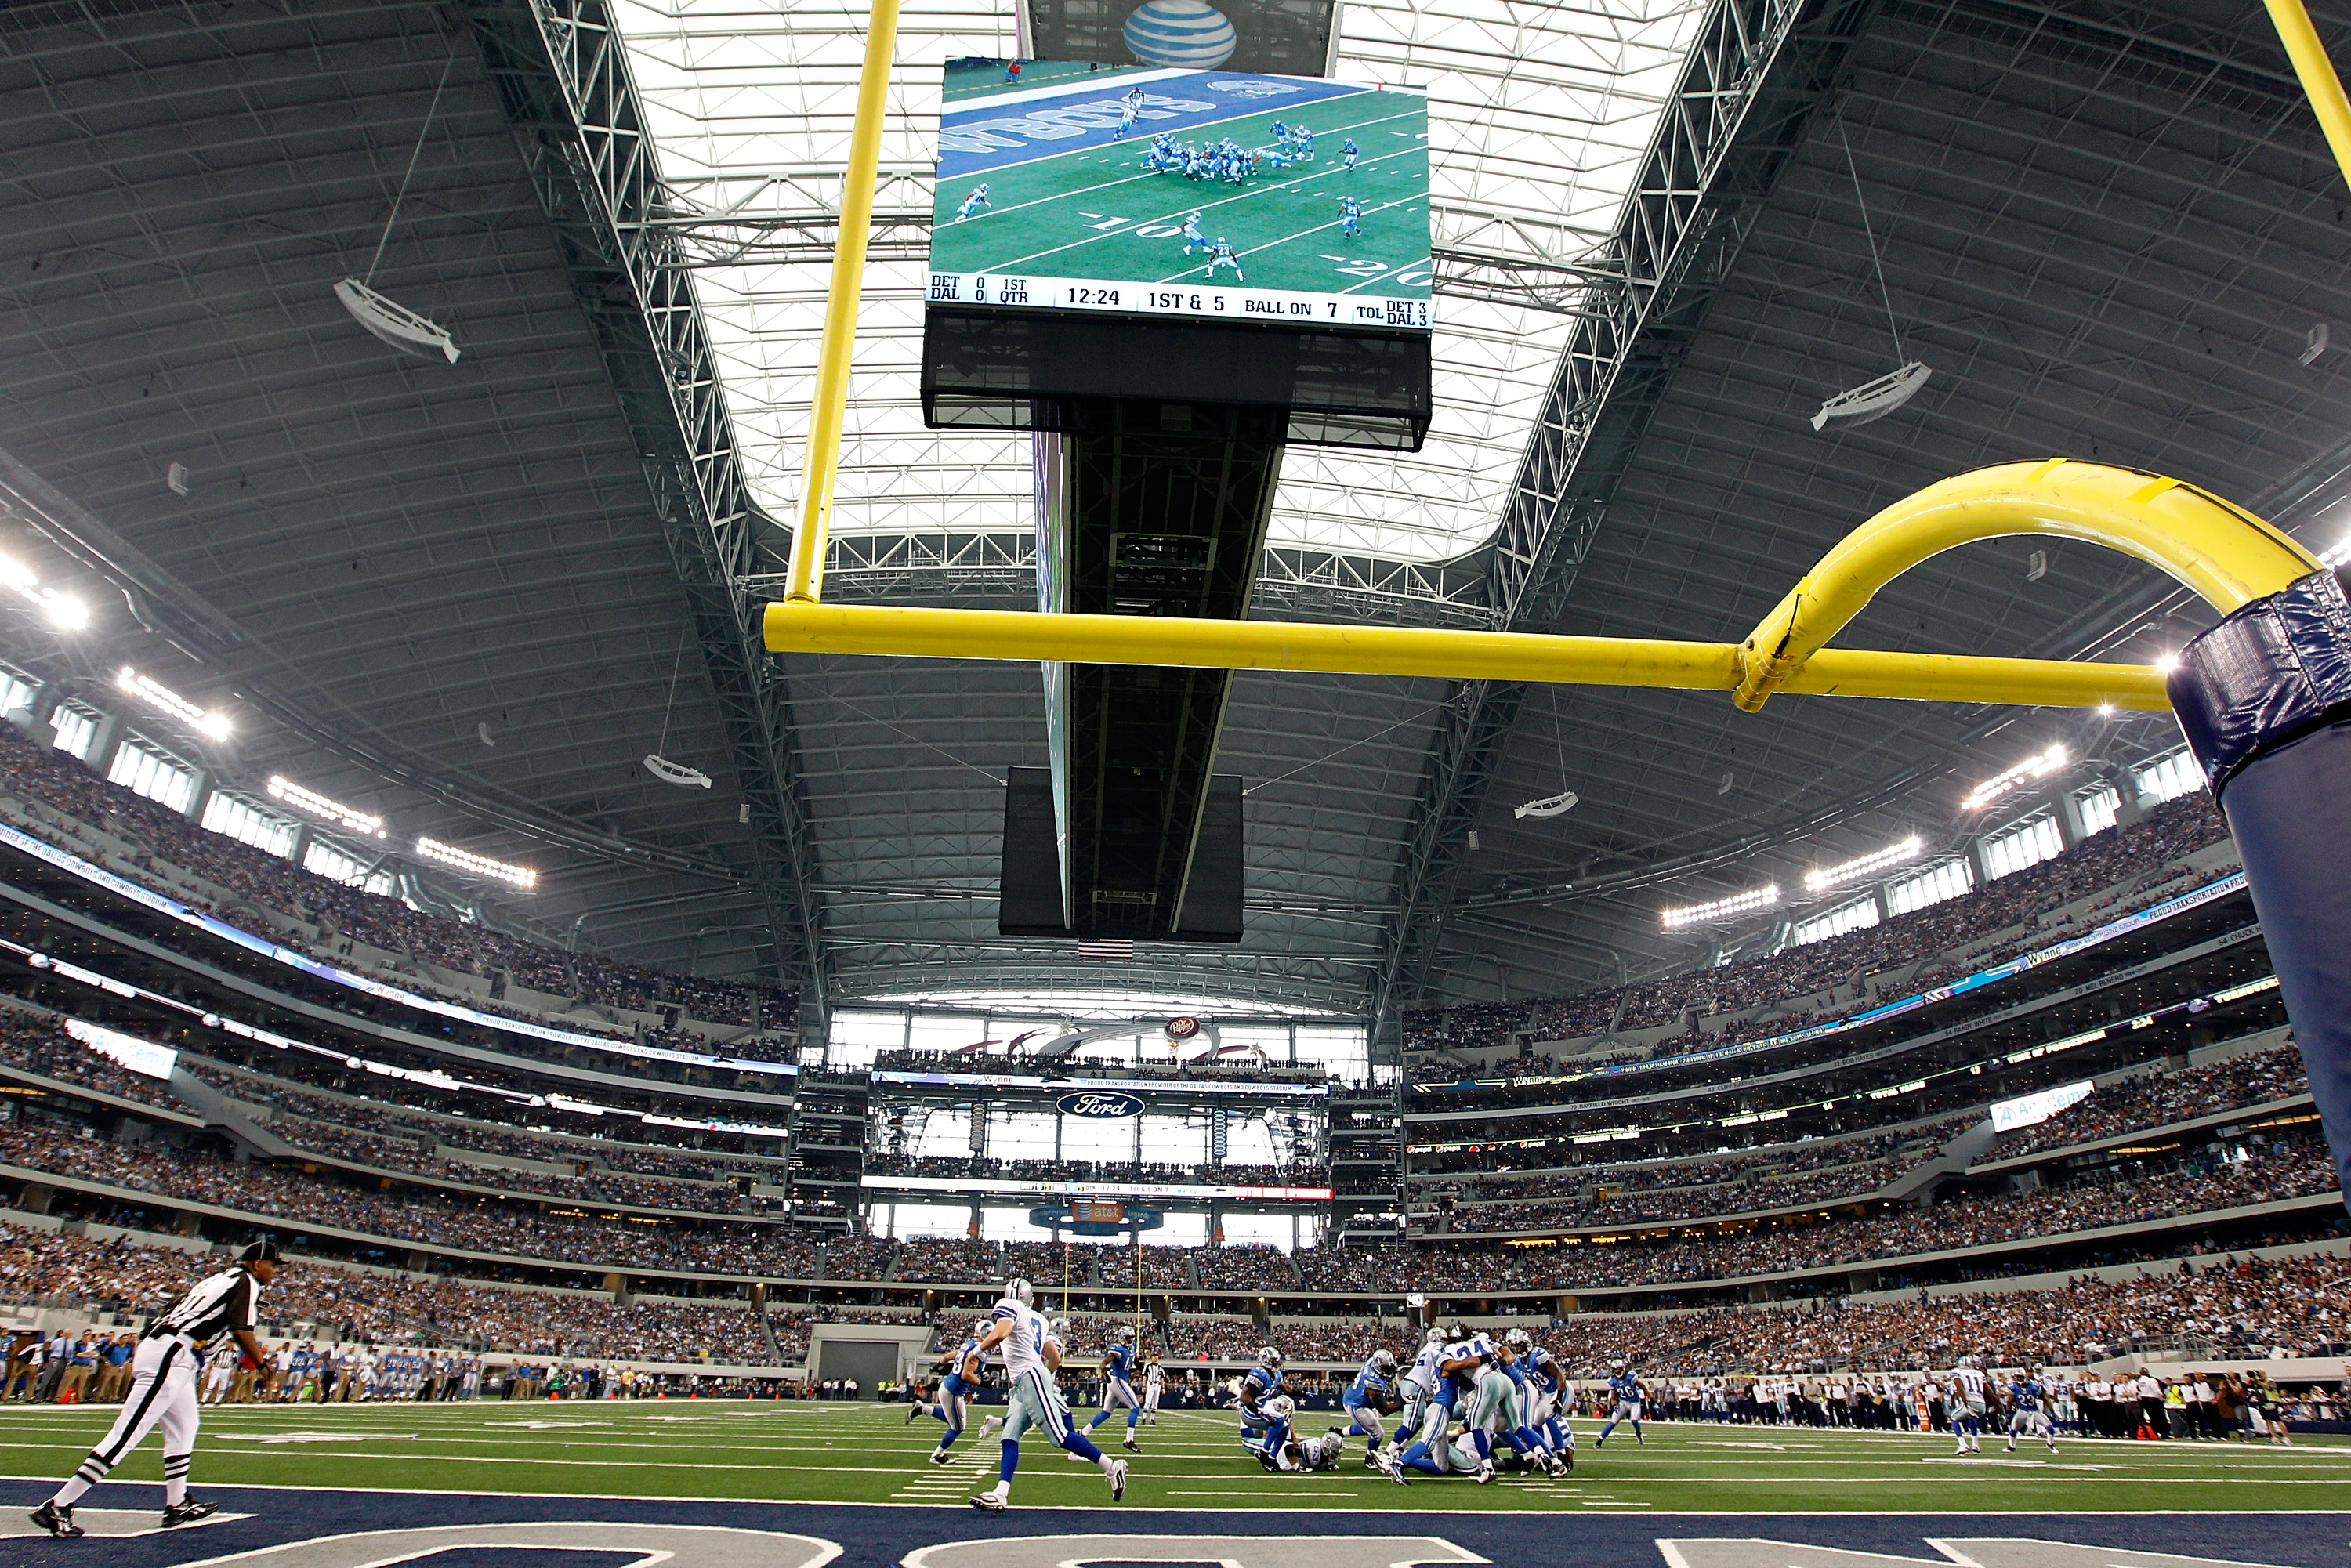 Cowboys fans given dreaded label in new NFL fan base rankings